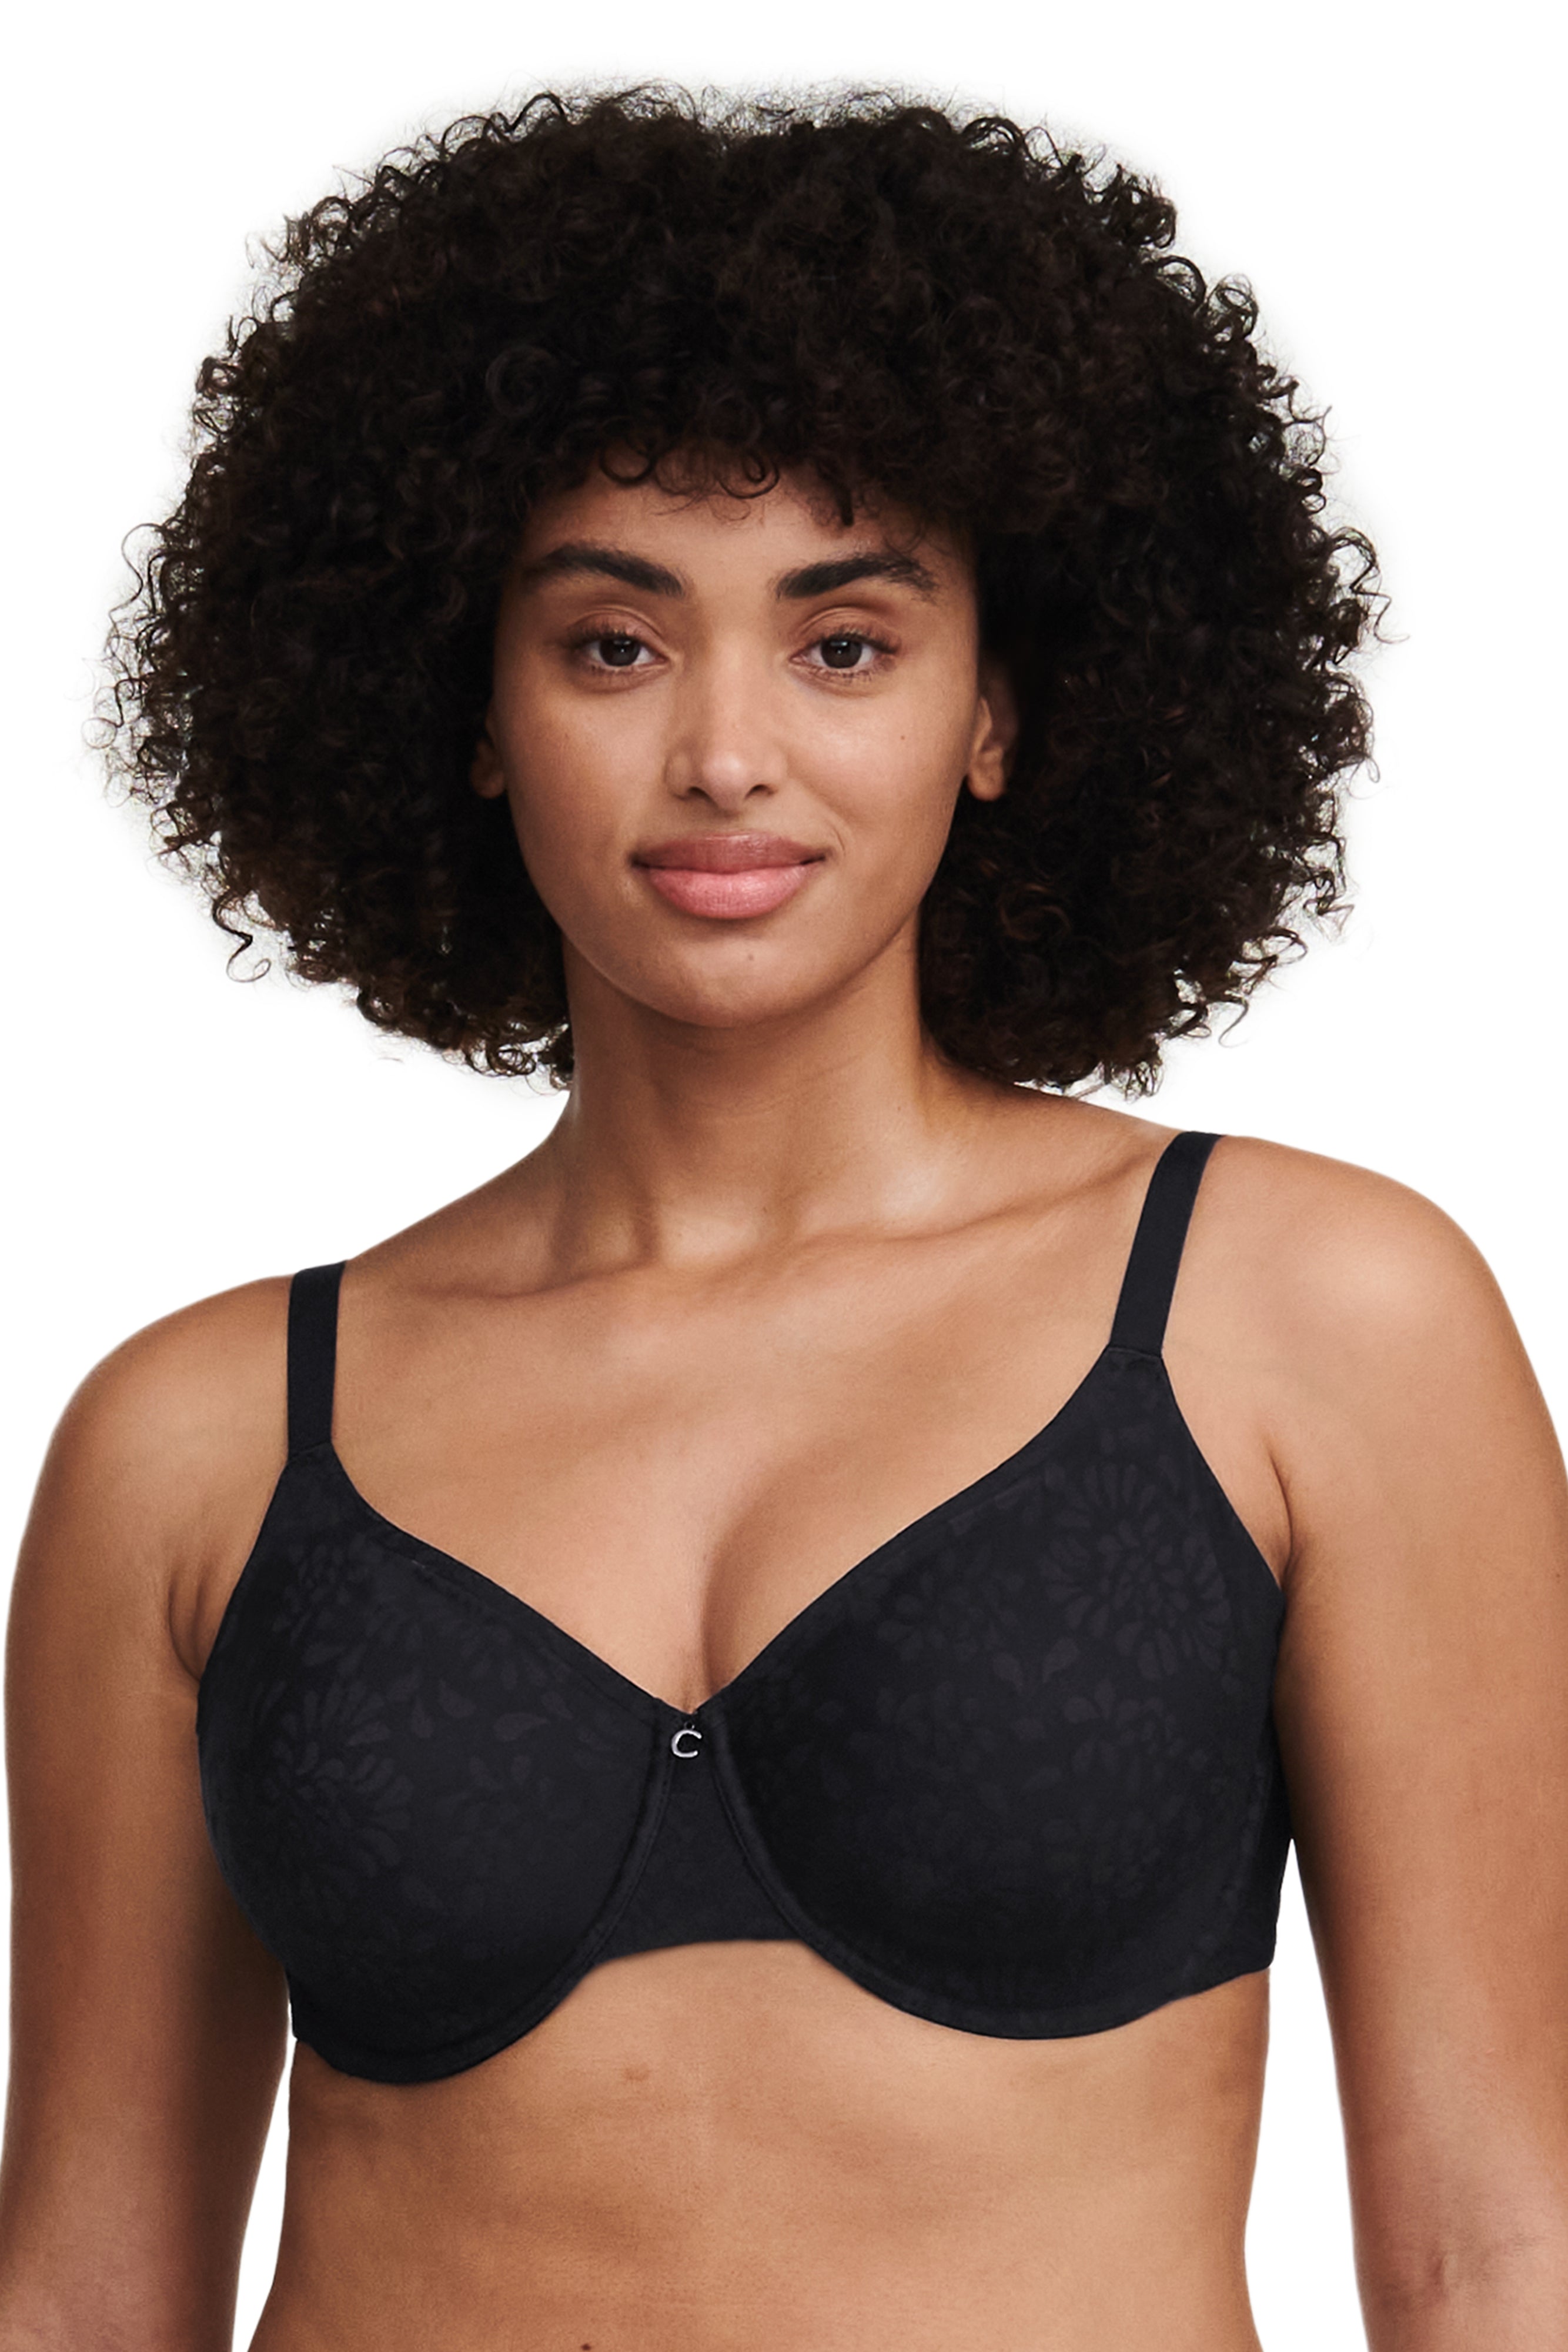 Female Underwear small breast Push Up Bra minimizer – Chilazexpress Ltd